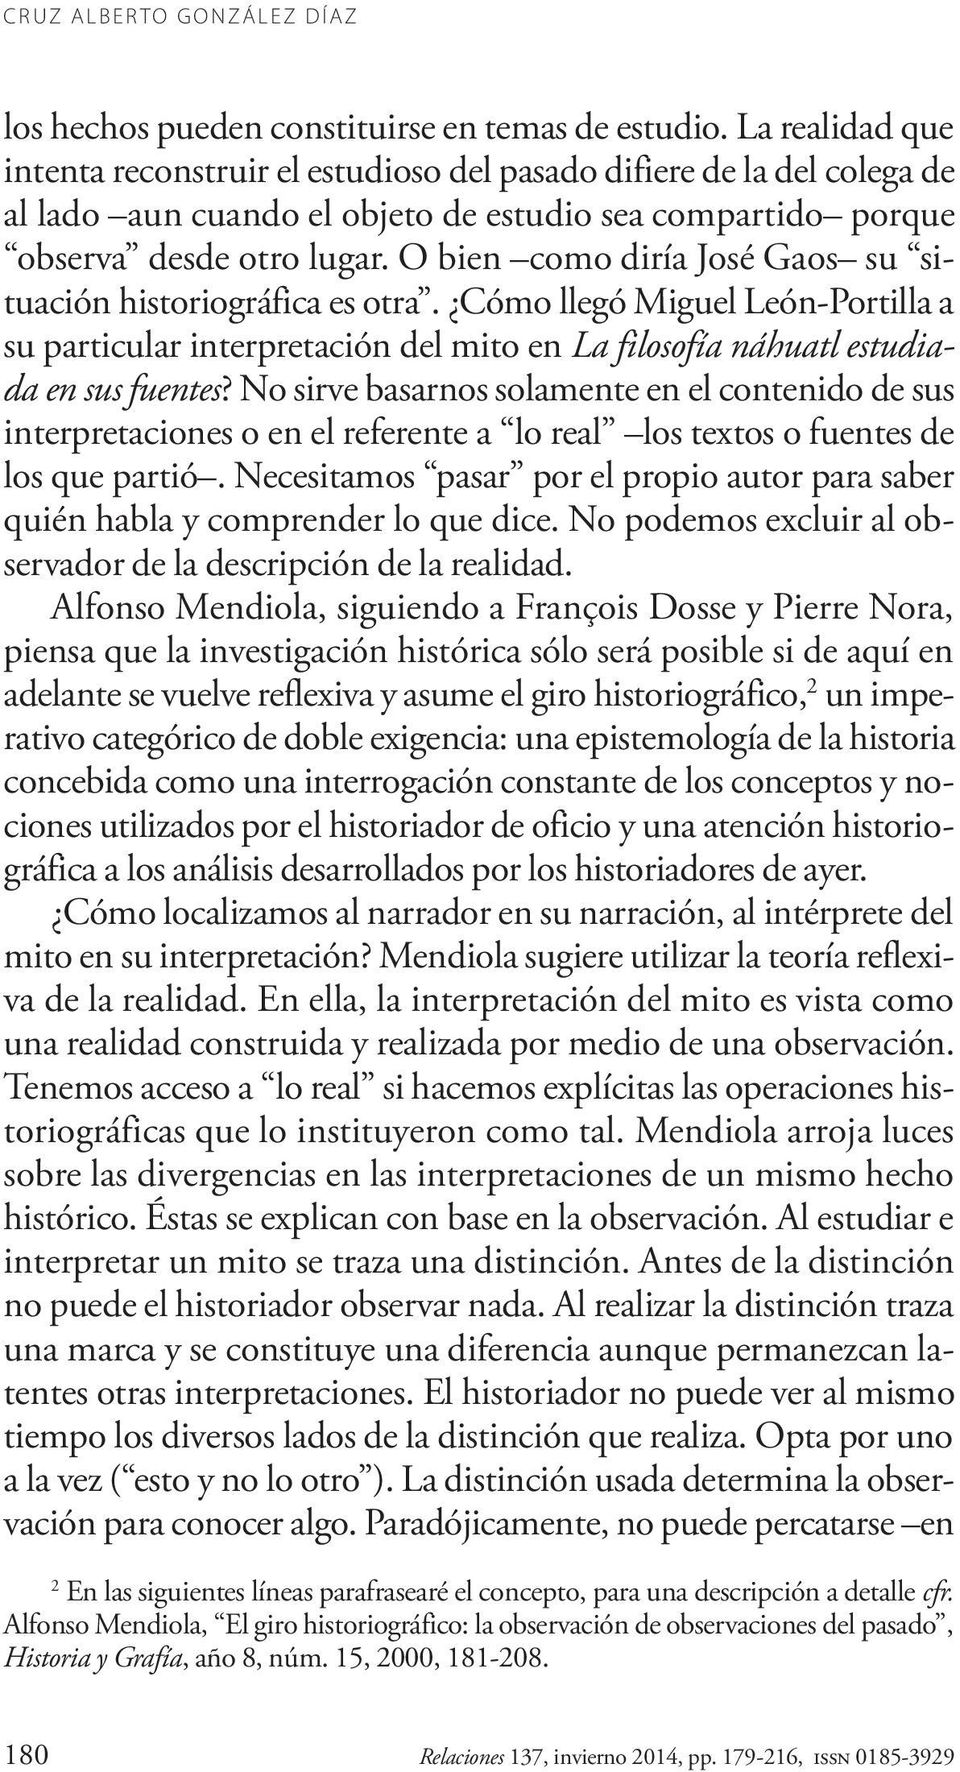 O bien como diría José Gaos su situación historiográfica es otra. Cómo llegó Miguel León-Portilla a su particular interpretación del mito en La filosofía náhuatl estudiada en sus fuentes?